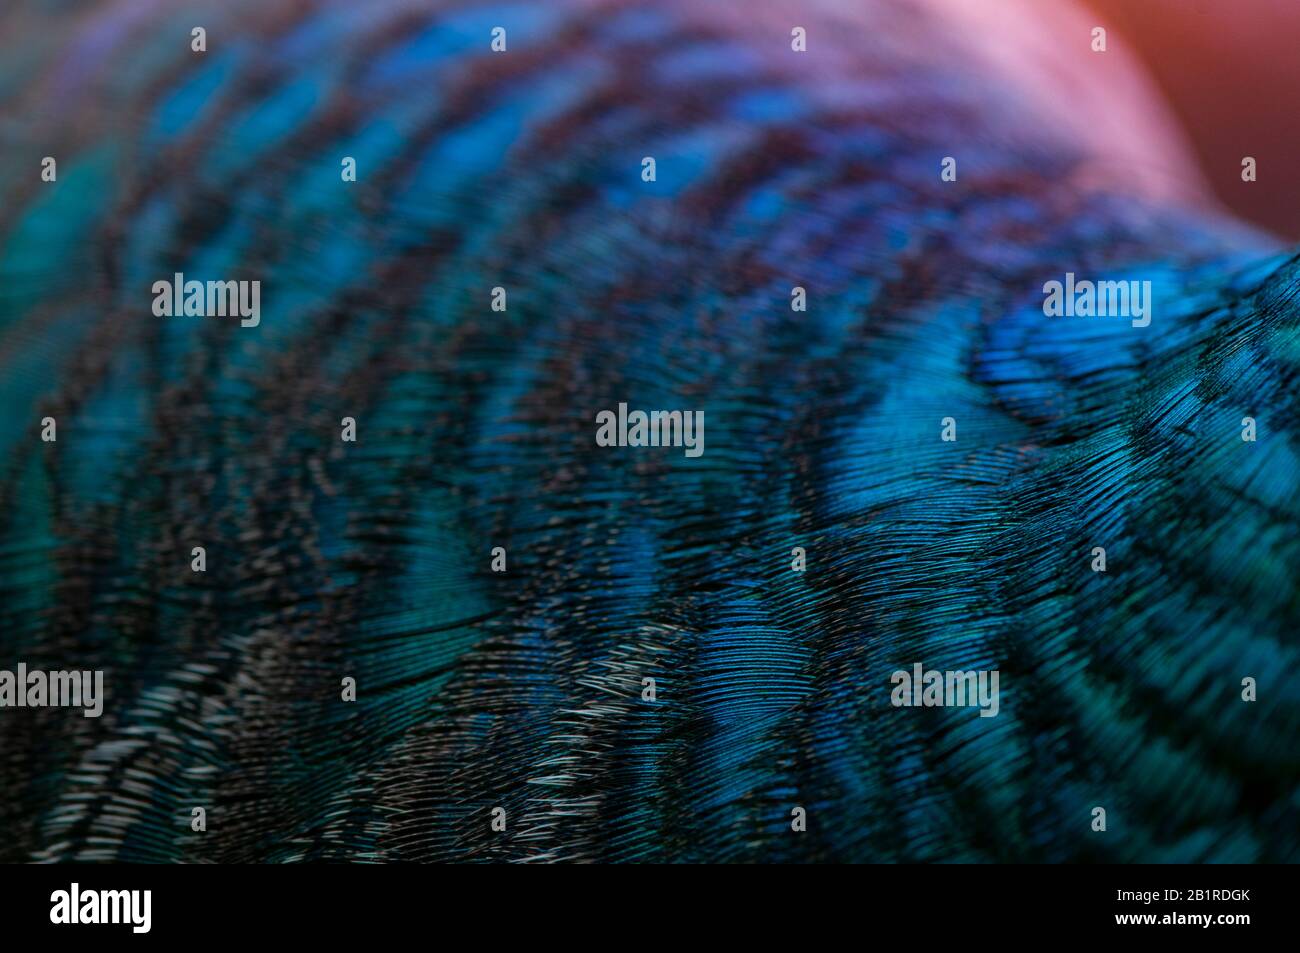 Primo piano delle piume di pavone.Macro piuma blu, piuma, uccello, animale. Fotografia macro. Foto Stock